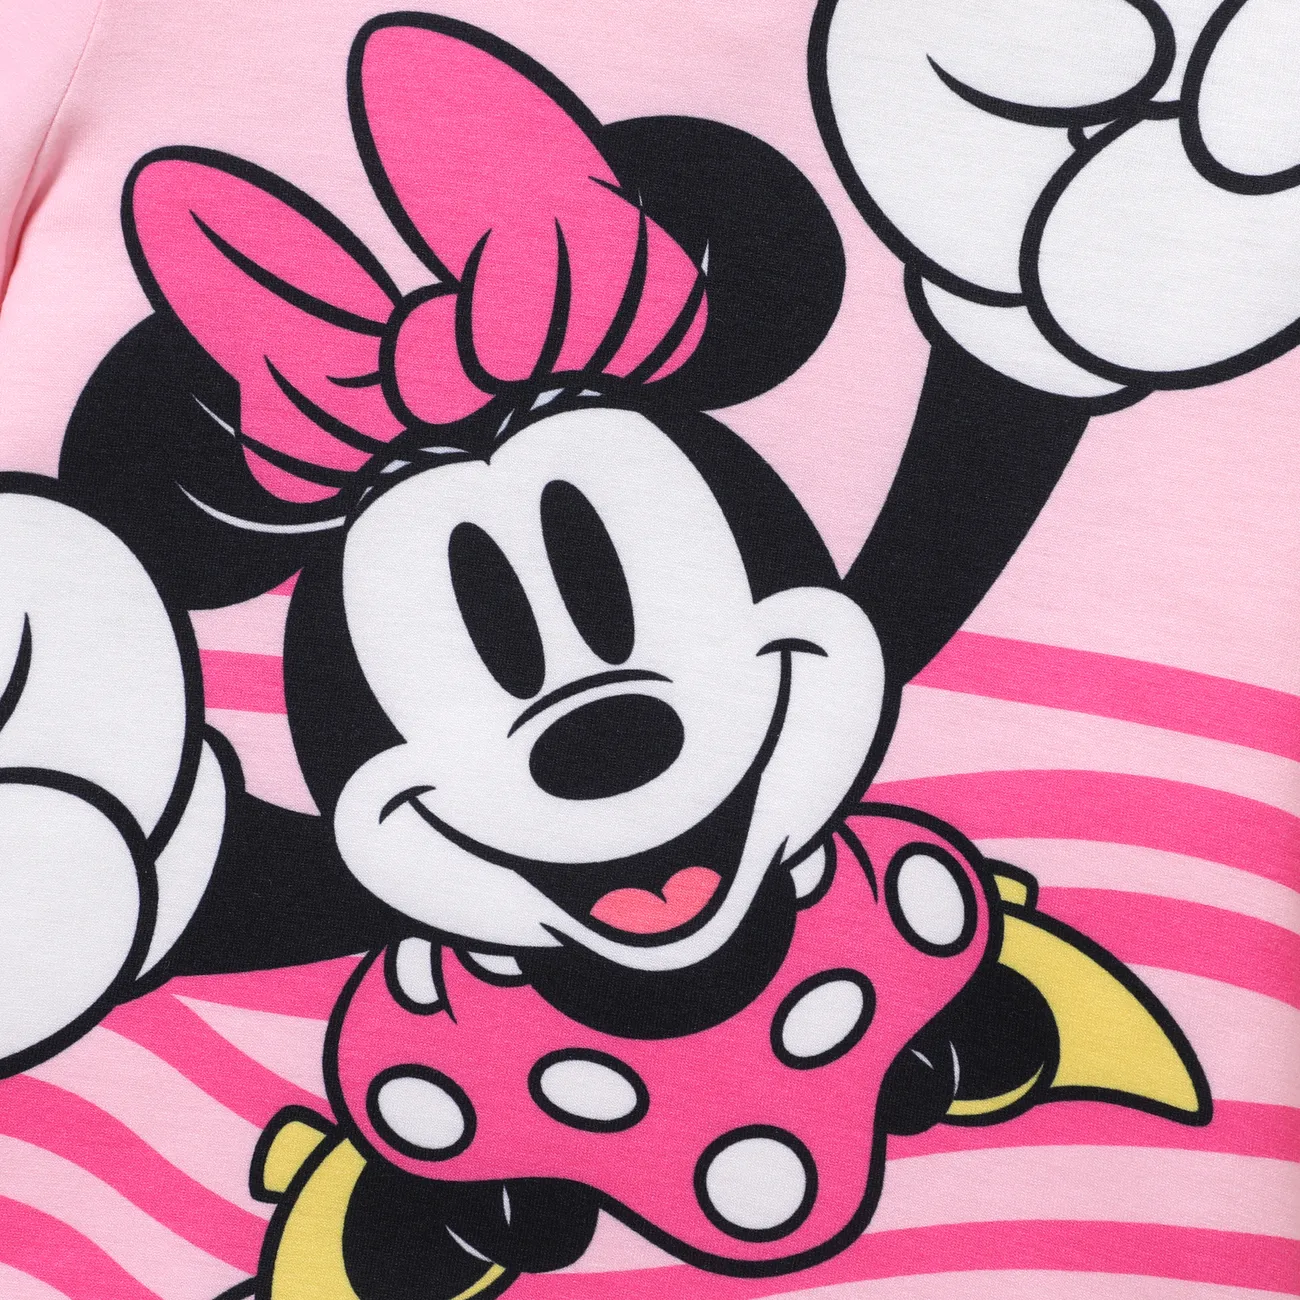 Disney Mickey et ses amis 1pc enfant en bas âge/enfant fille/garçon personnage noué/rayure/coloré imprimé Naia™ T-shirt à manches courtes rose clair big image 1